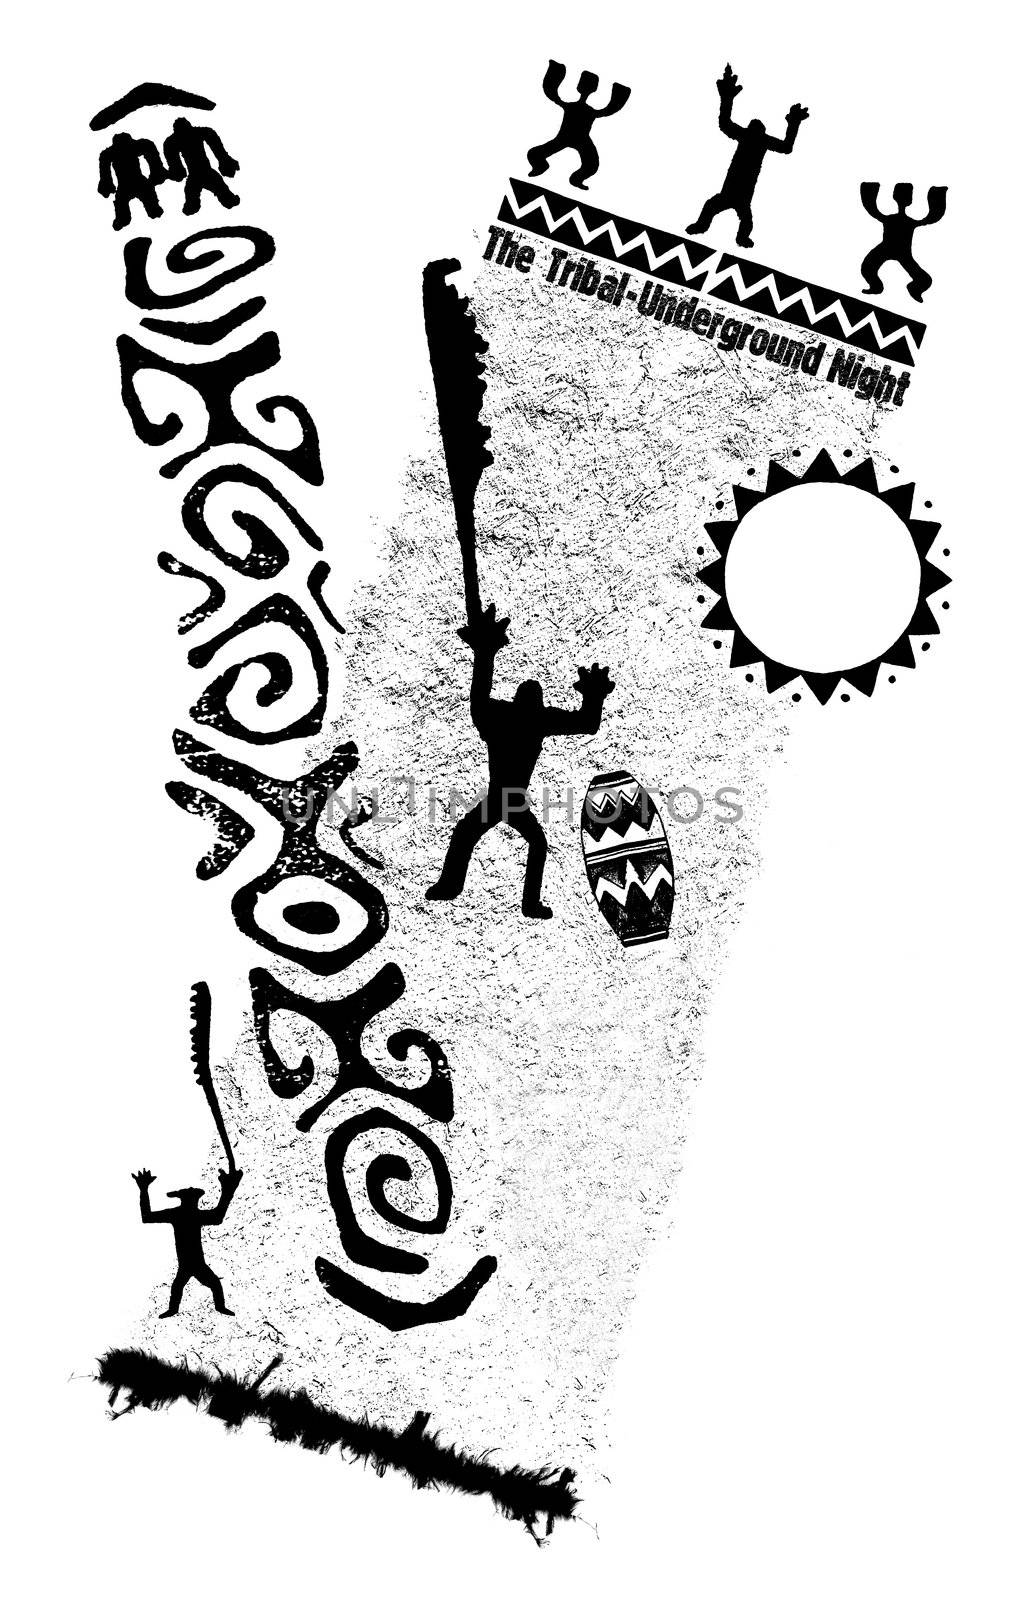 Illustration in black and white - tribal spirit - africa